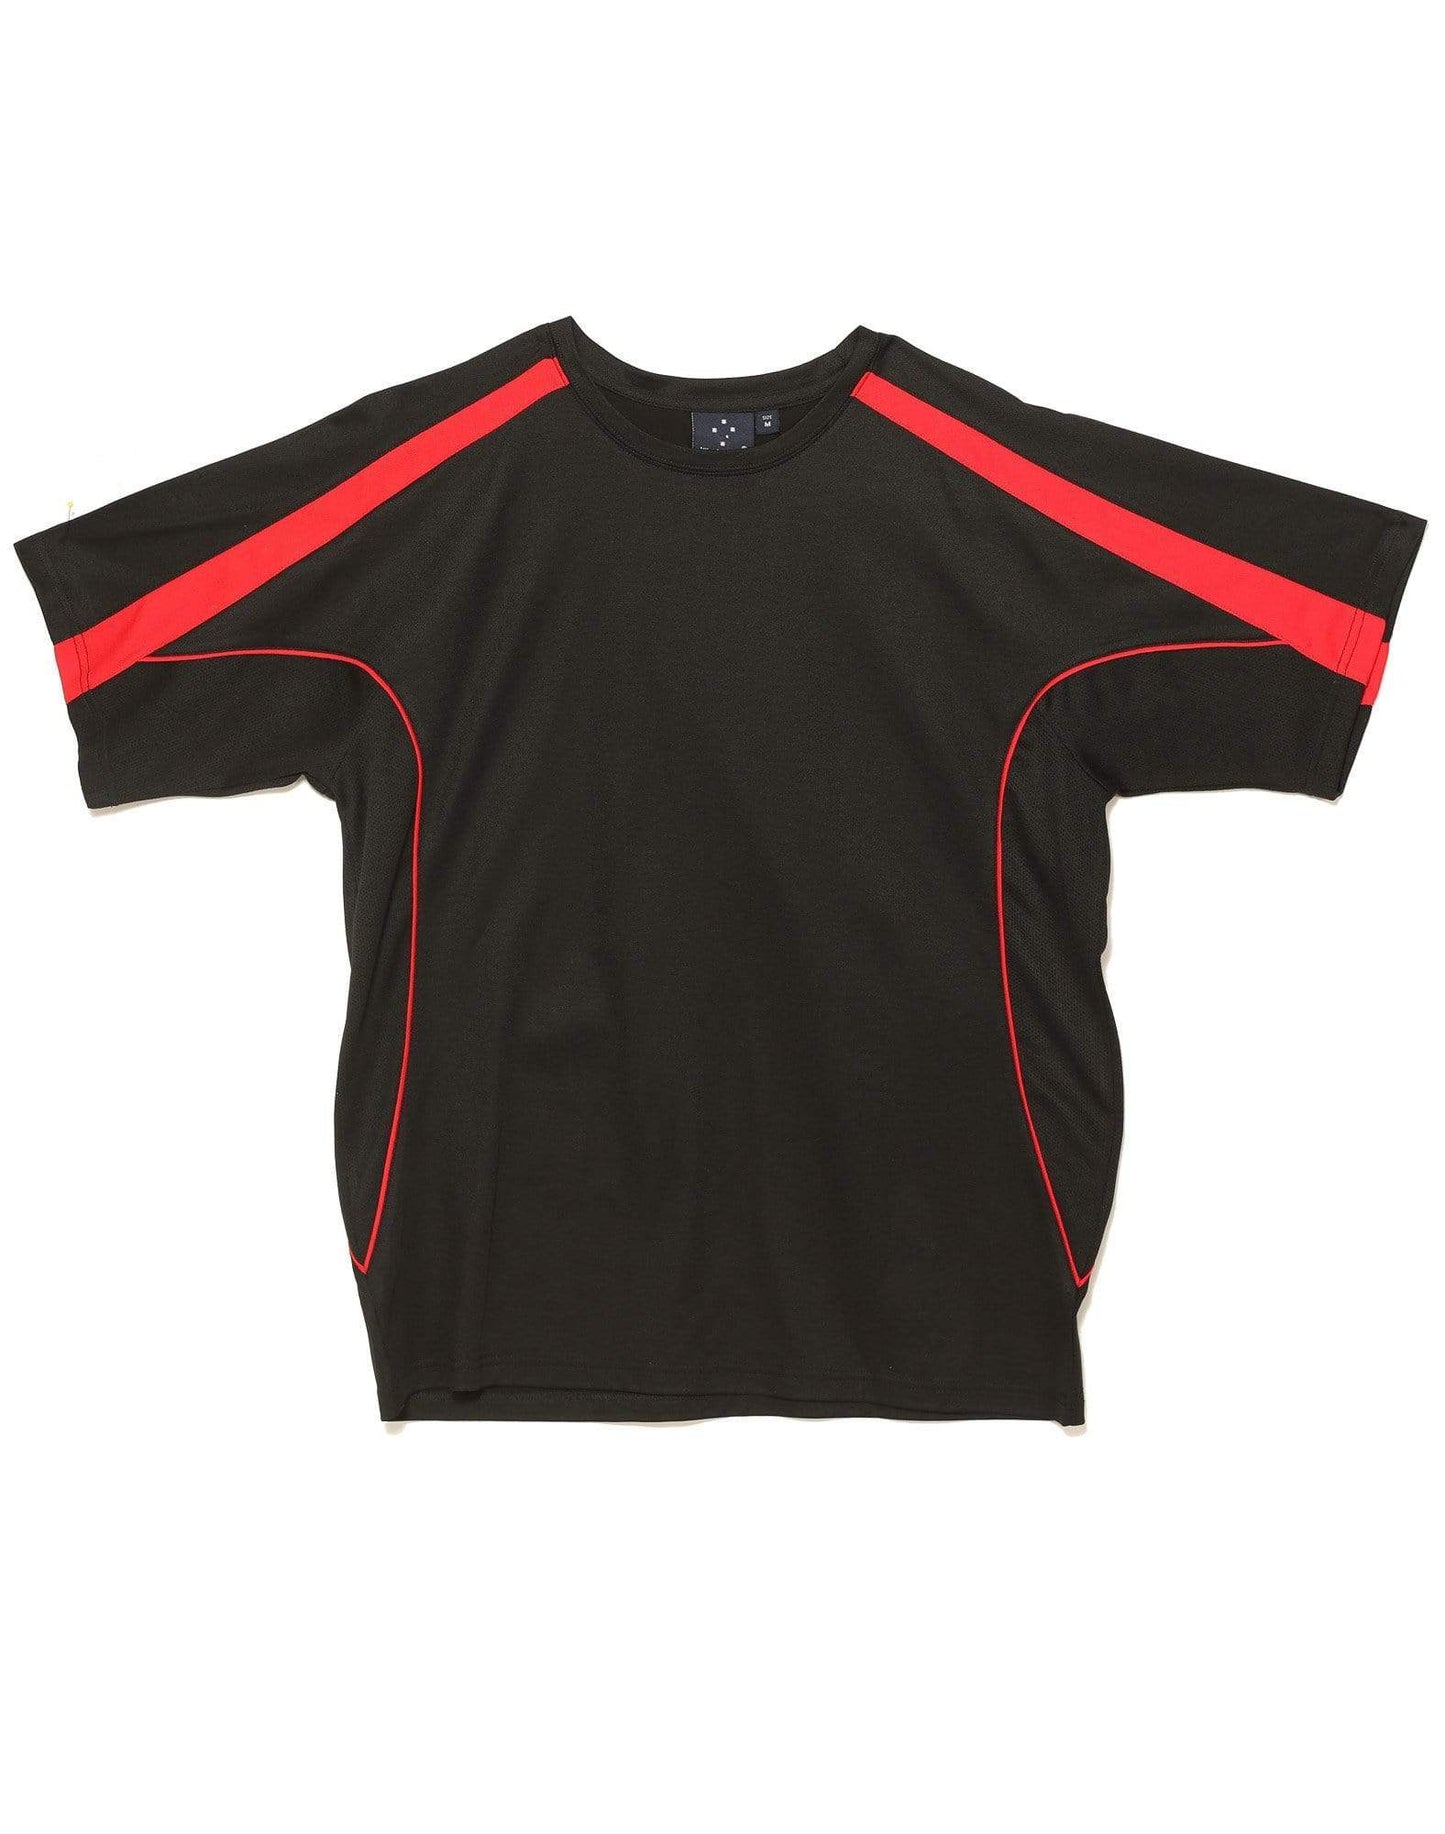 Legend Tee Shirt Men's Ts53 Casual Wear Winning Spirit Black/Red XS 